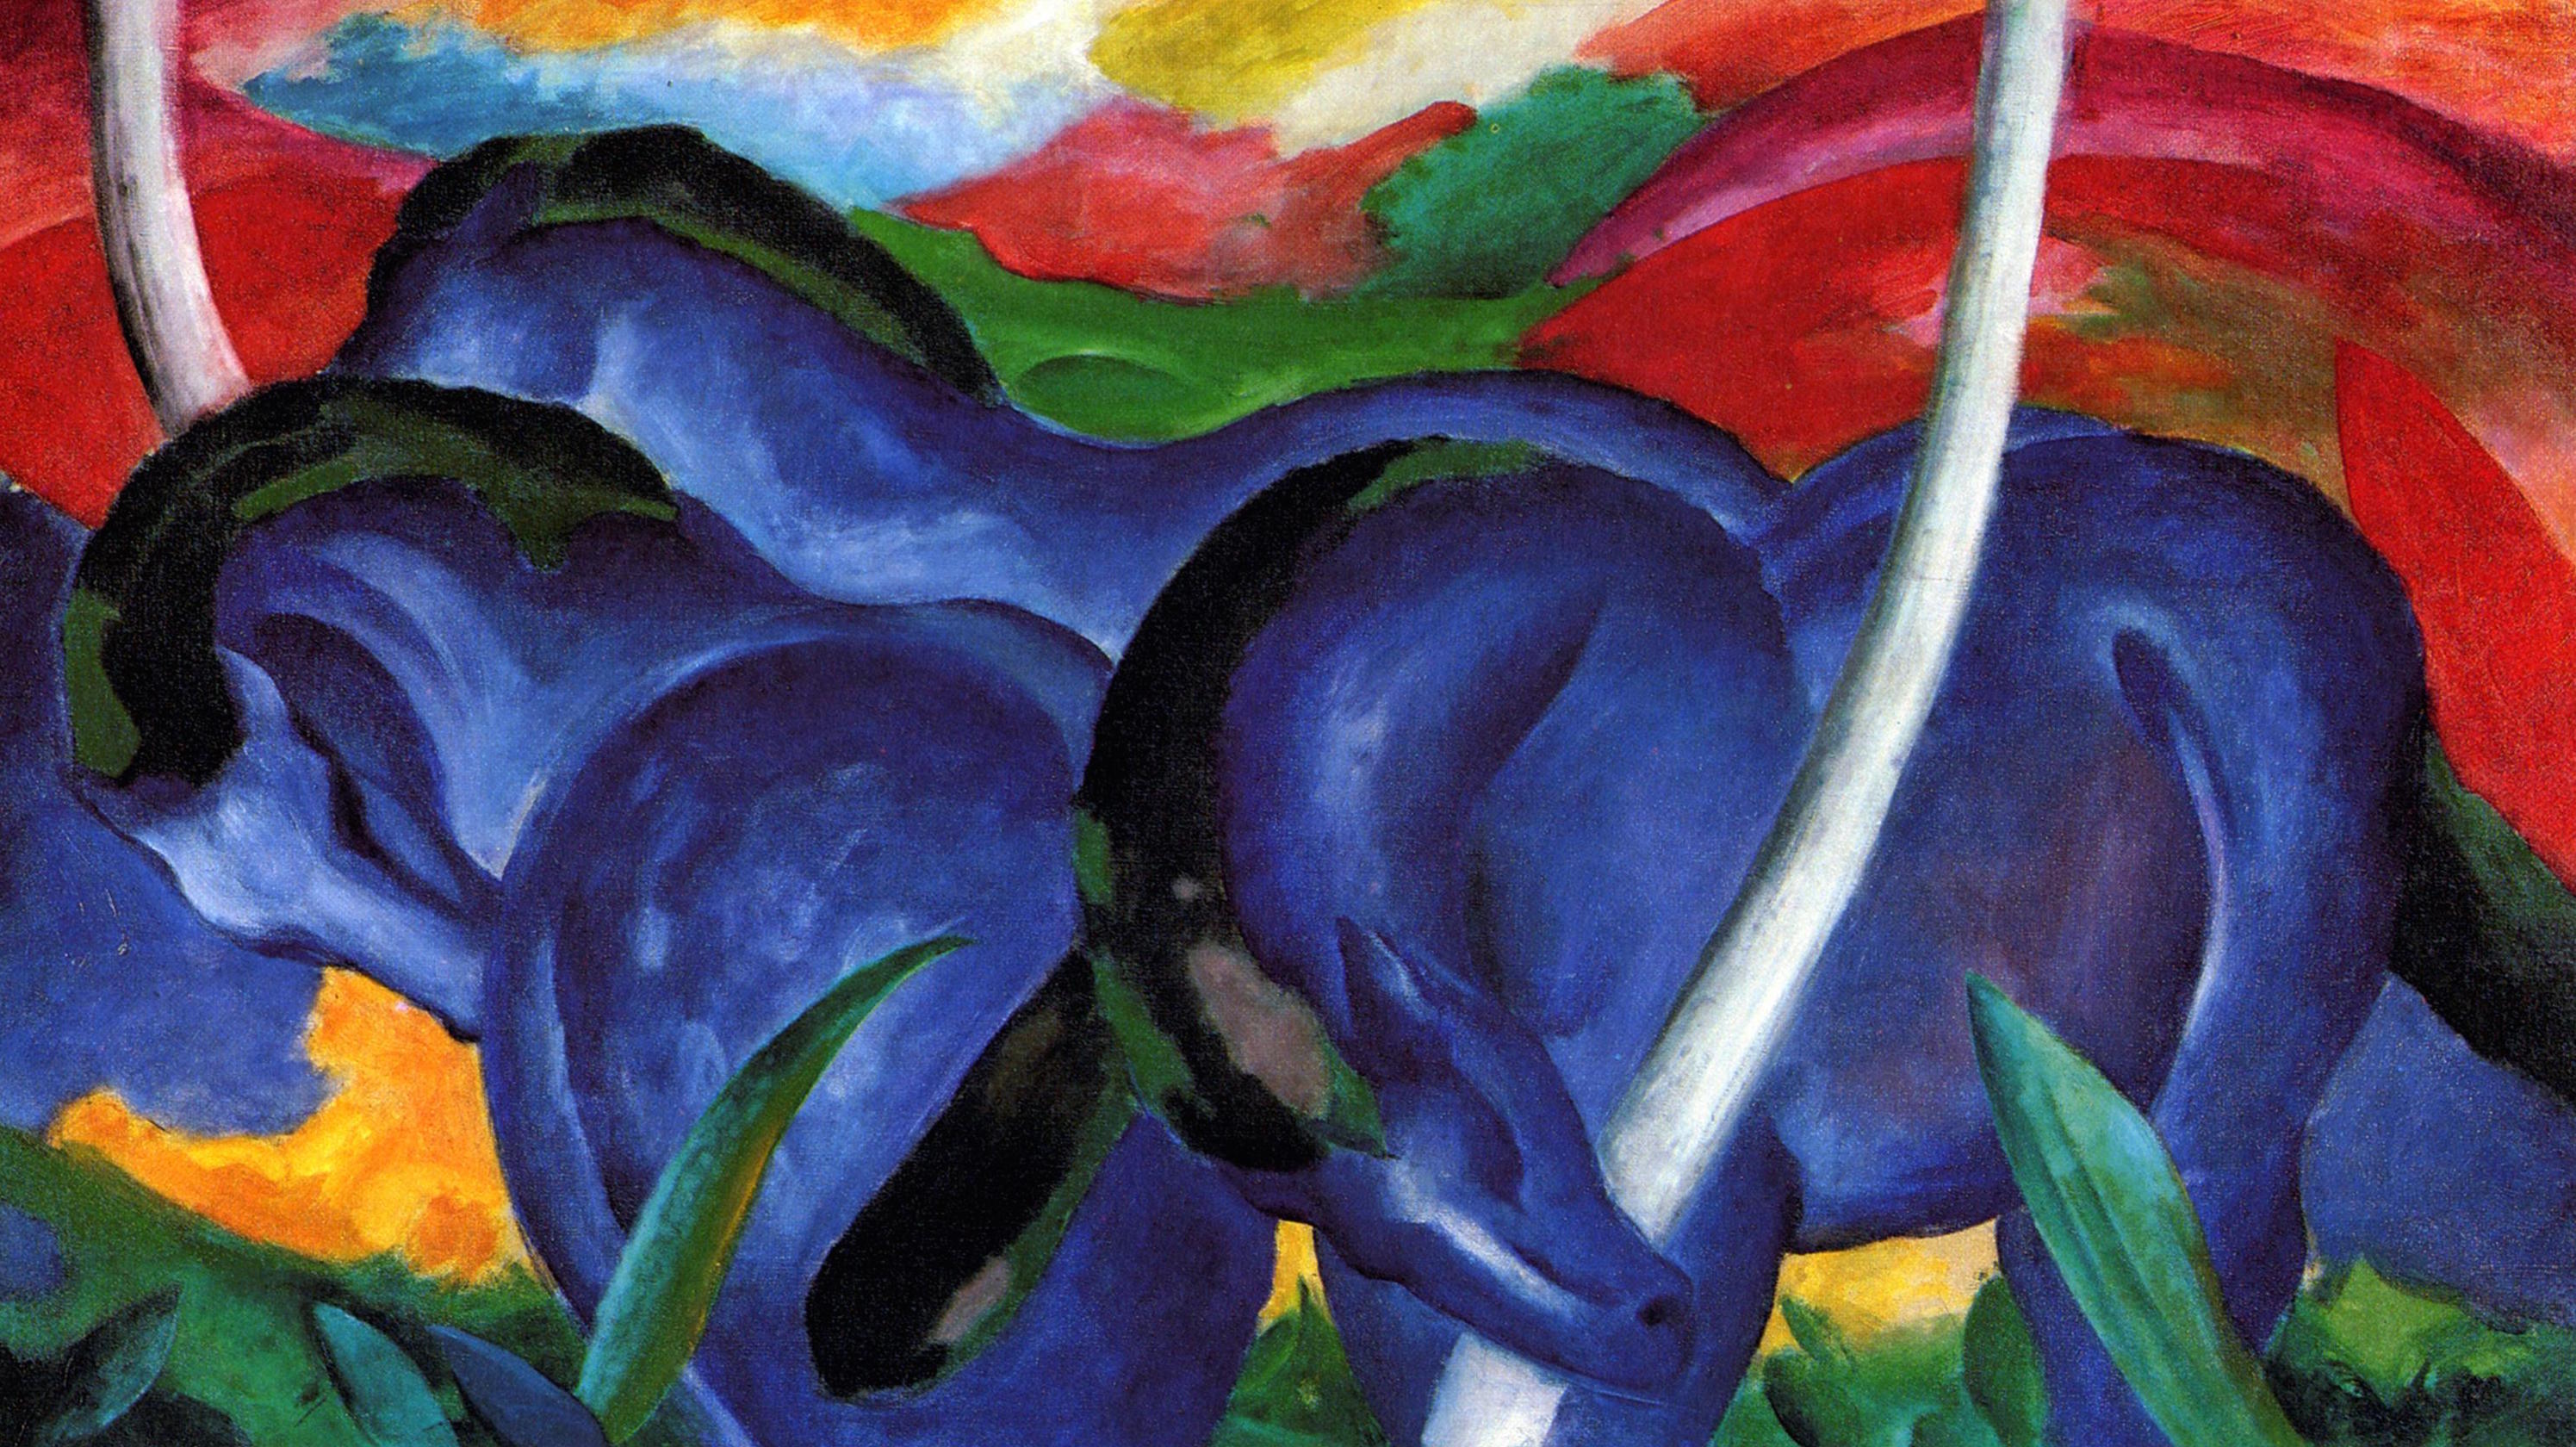 Velcí modří koně by Franz Marc - 1911 - 105,7 x 181,1 cm 